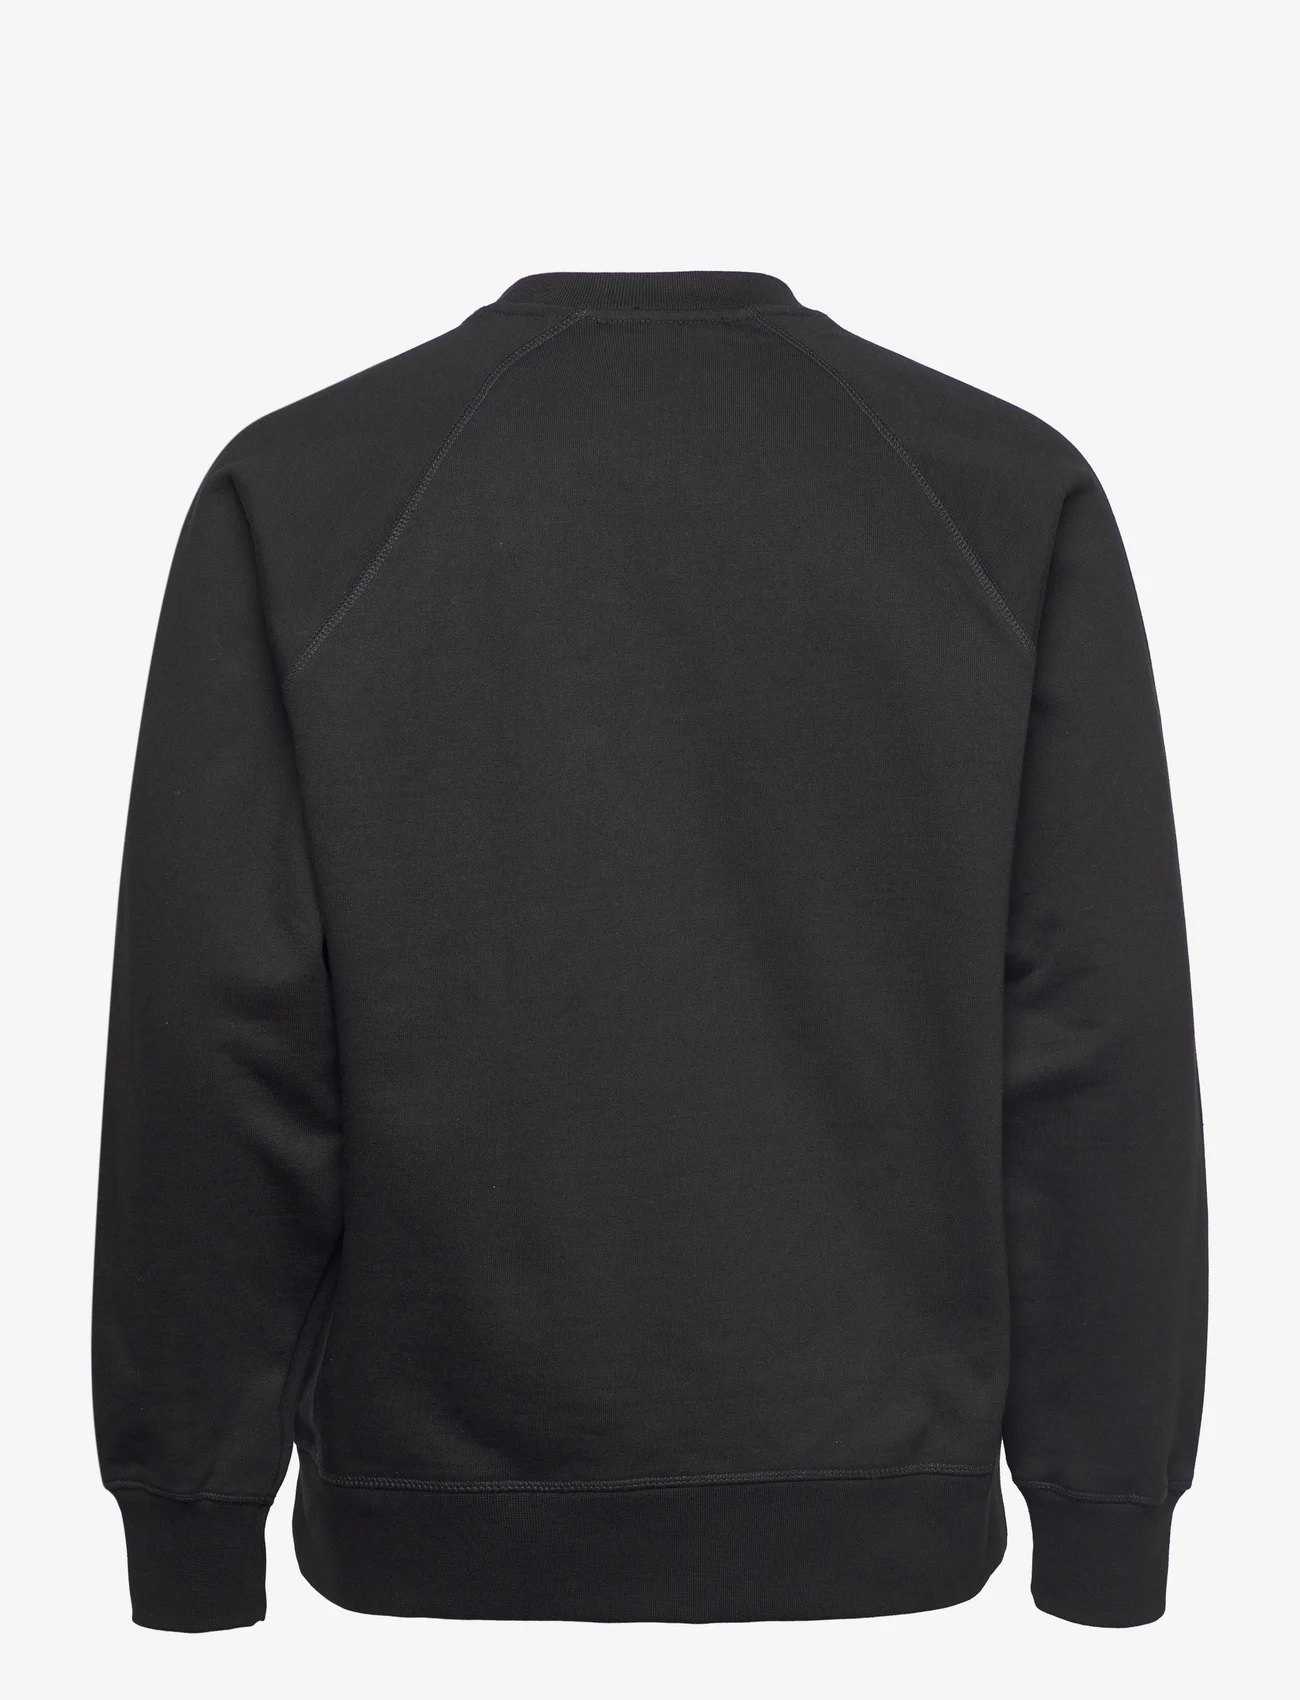 Wood Wood - Hester IVY sweatshirt - truien en hoodies - black - 1